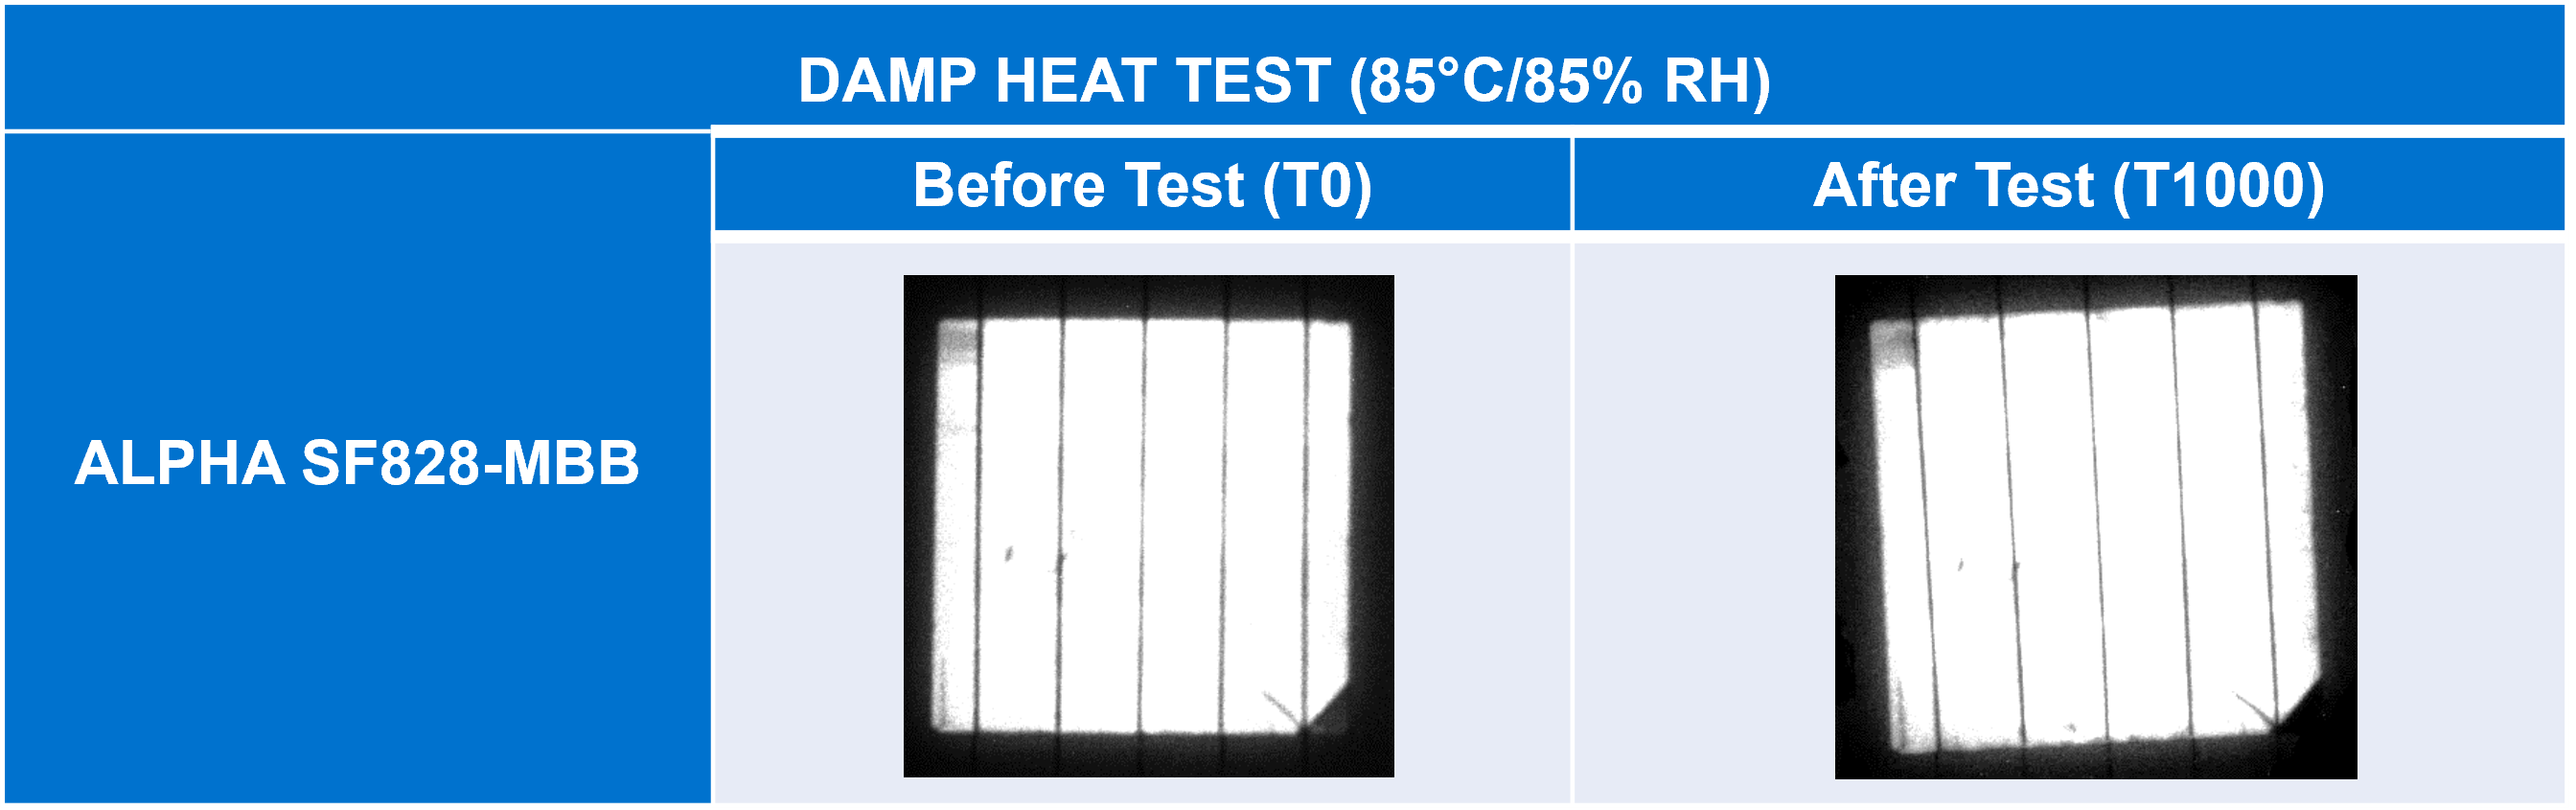 Alpha SF828 MBB Damp Heat Test